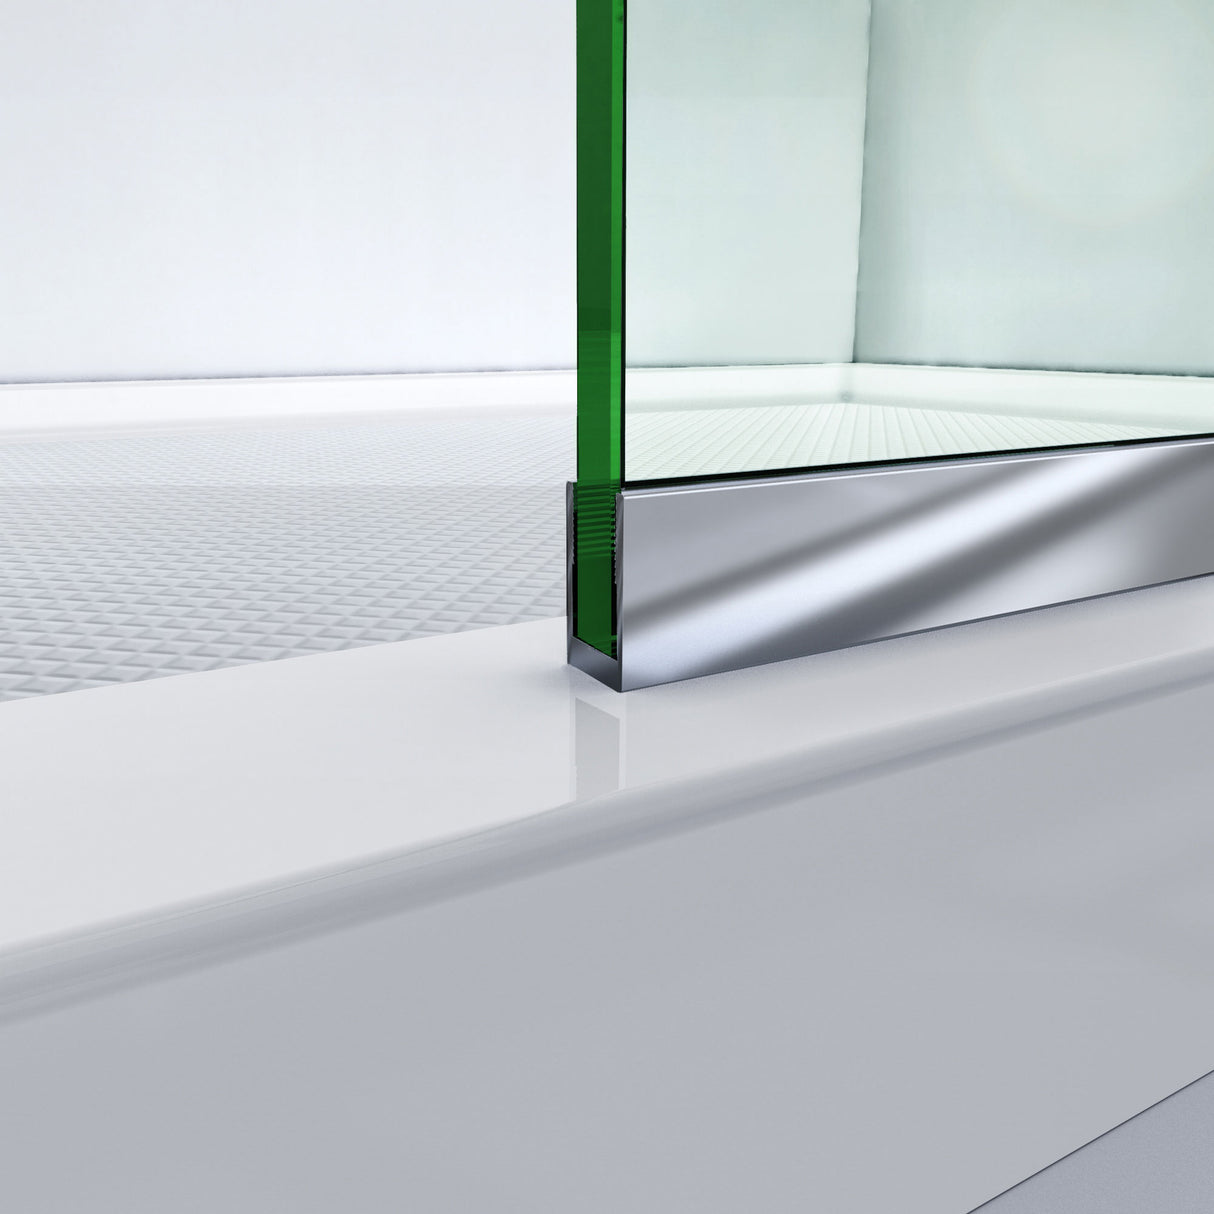 DreamLine Linea Single Panel Frameless Shower Screen 30 in. W x 72 in. H, Open Entry Design in Brushed Nickel